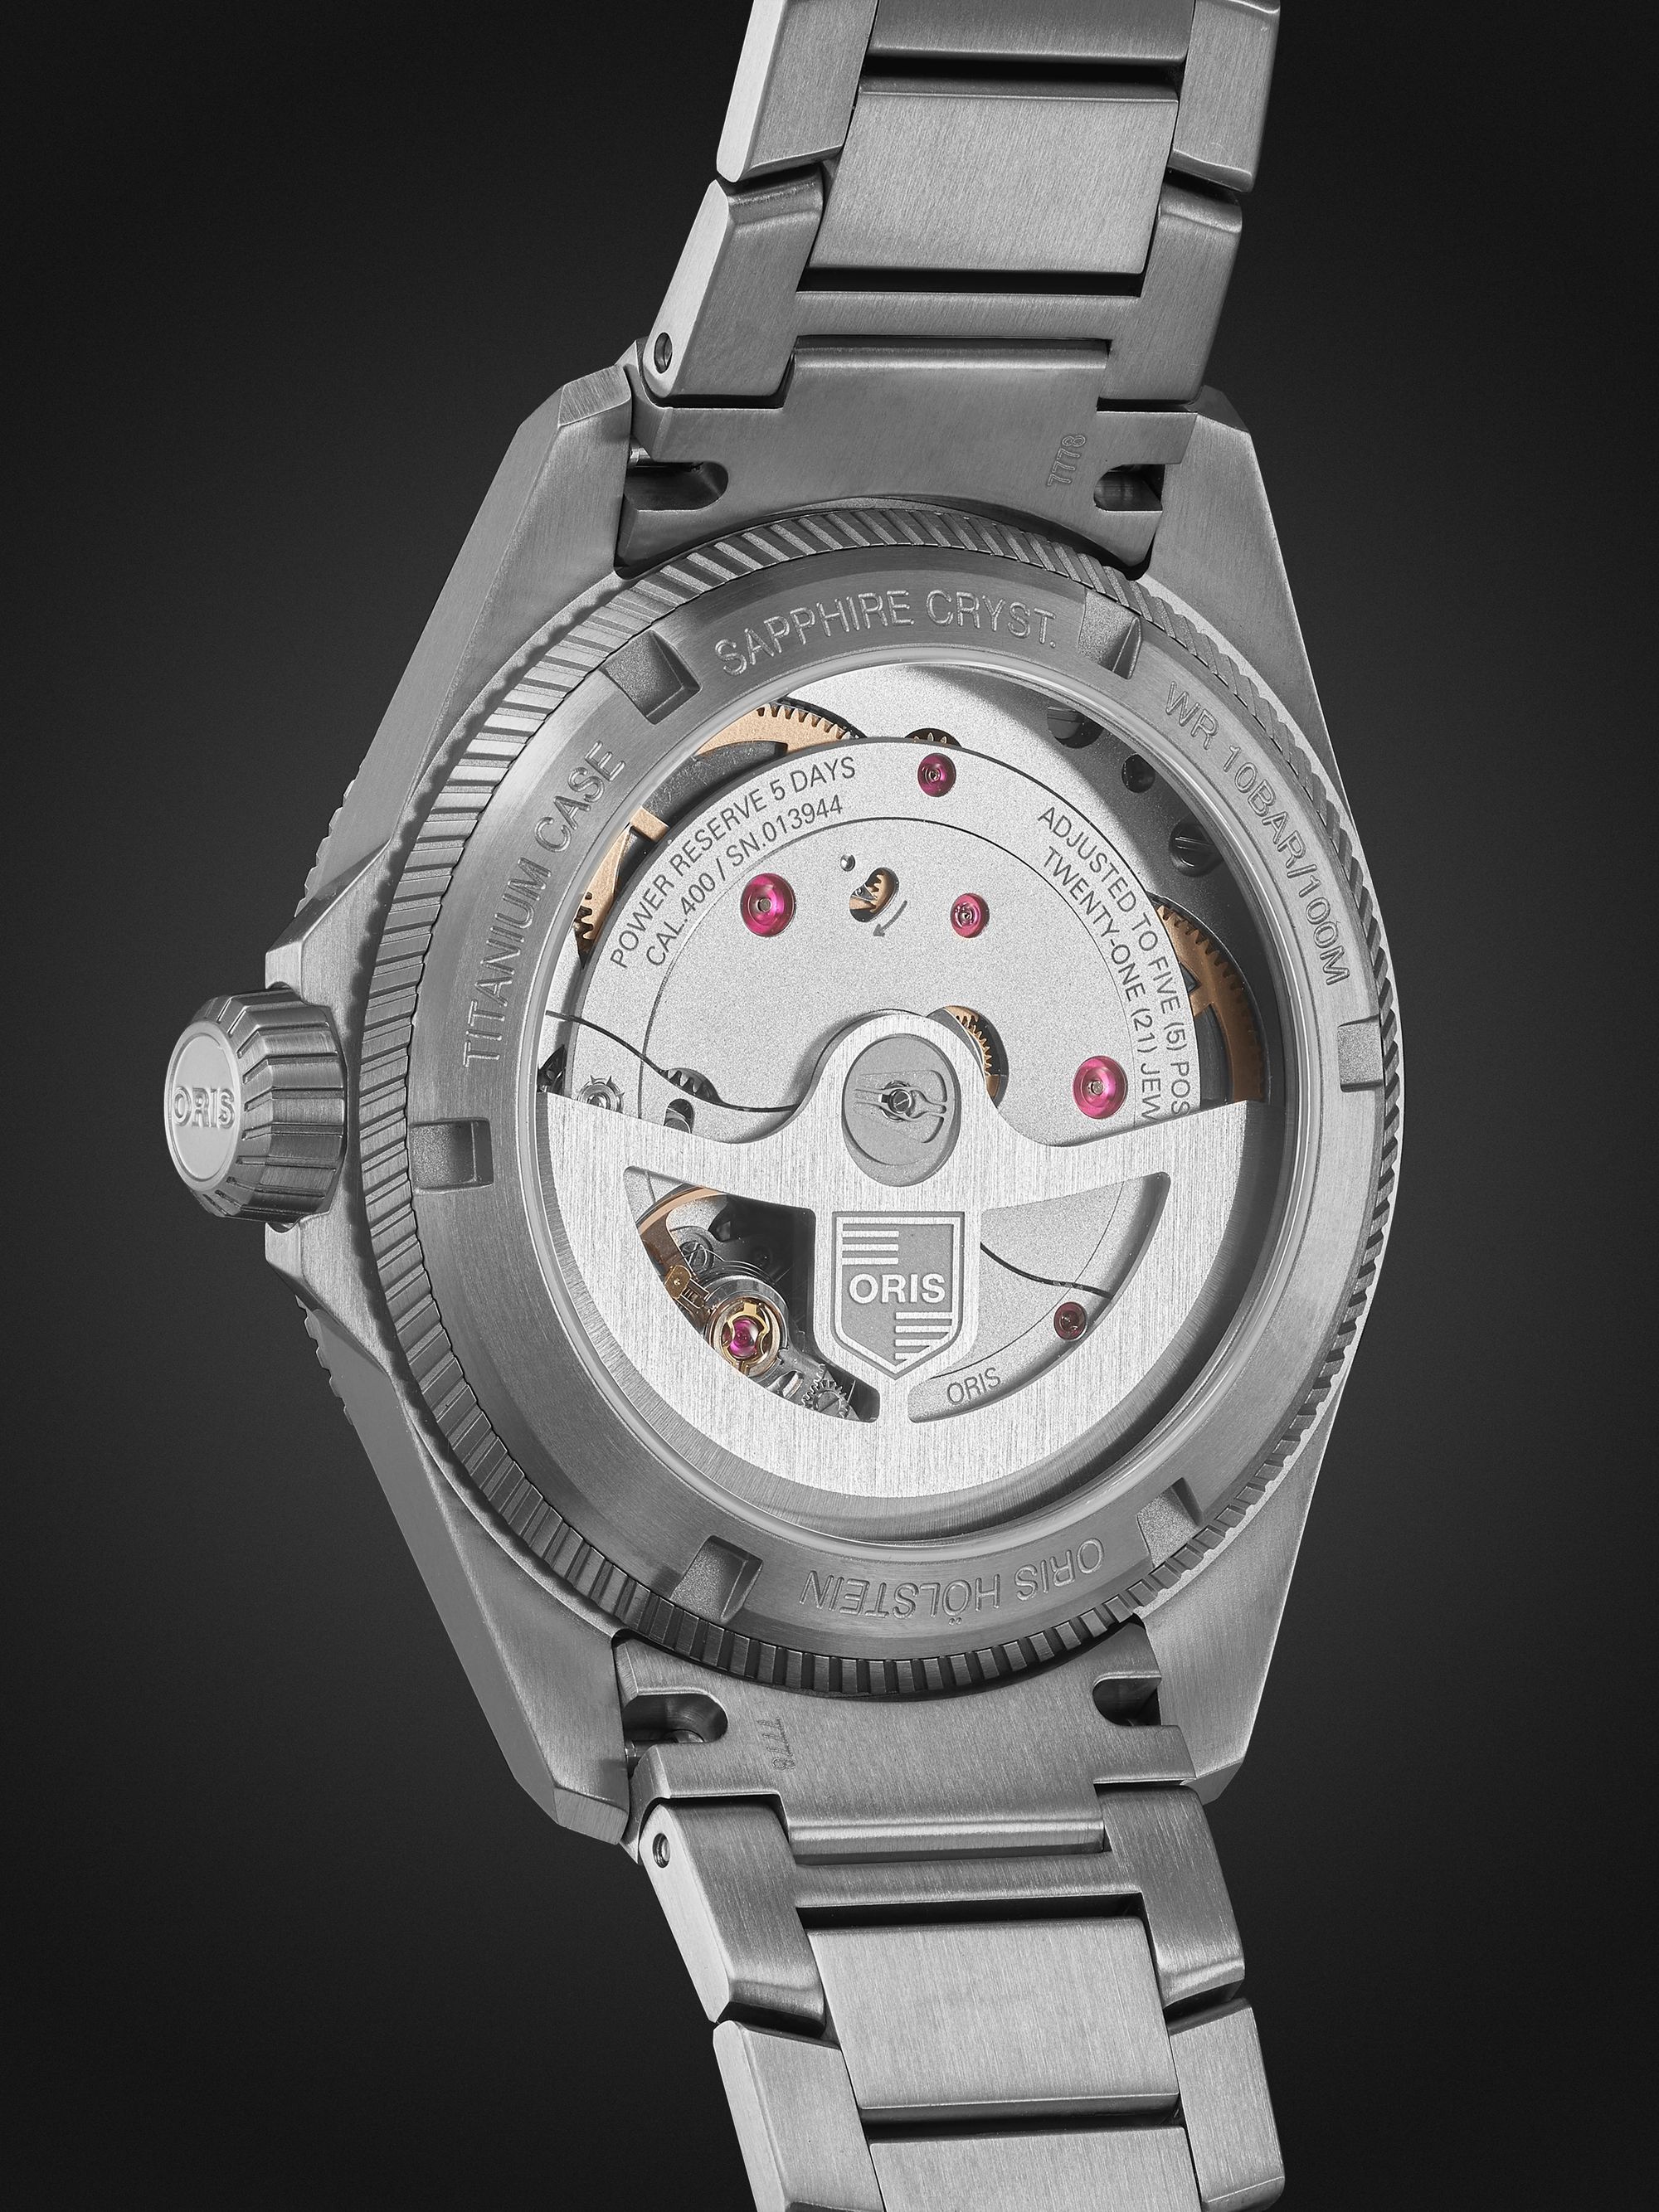 ORIS ProPilot X Calibre 400 Automatic 39mm Titanium Watch, Ref. No. 01 400 7778 7153-07 7 20 01TLC